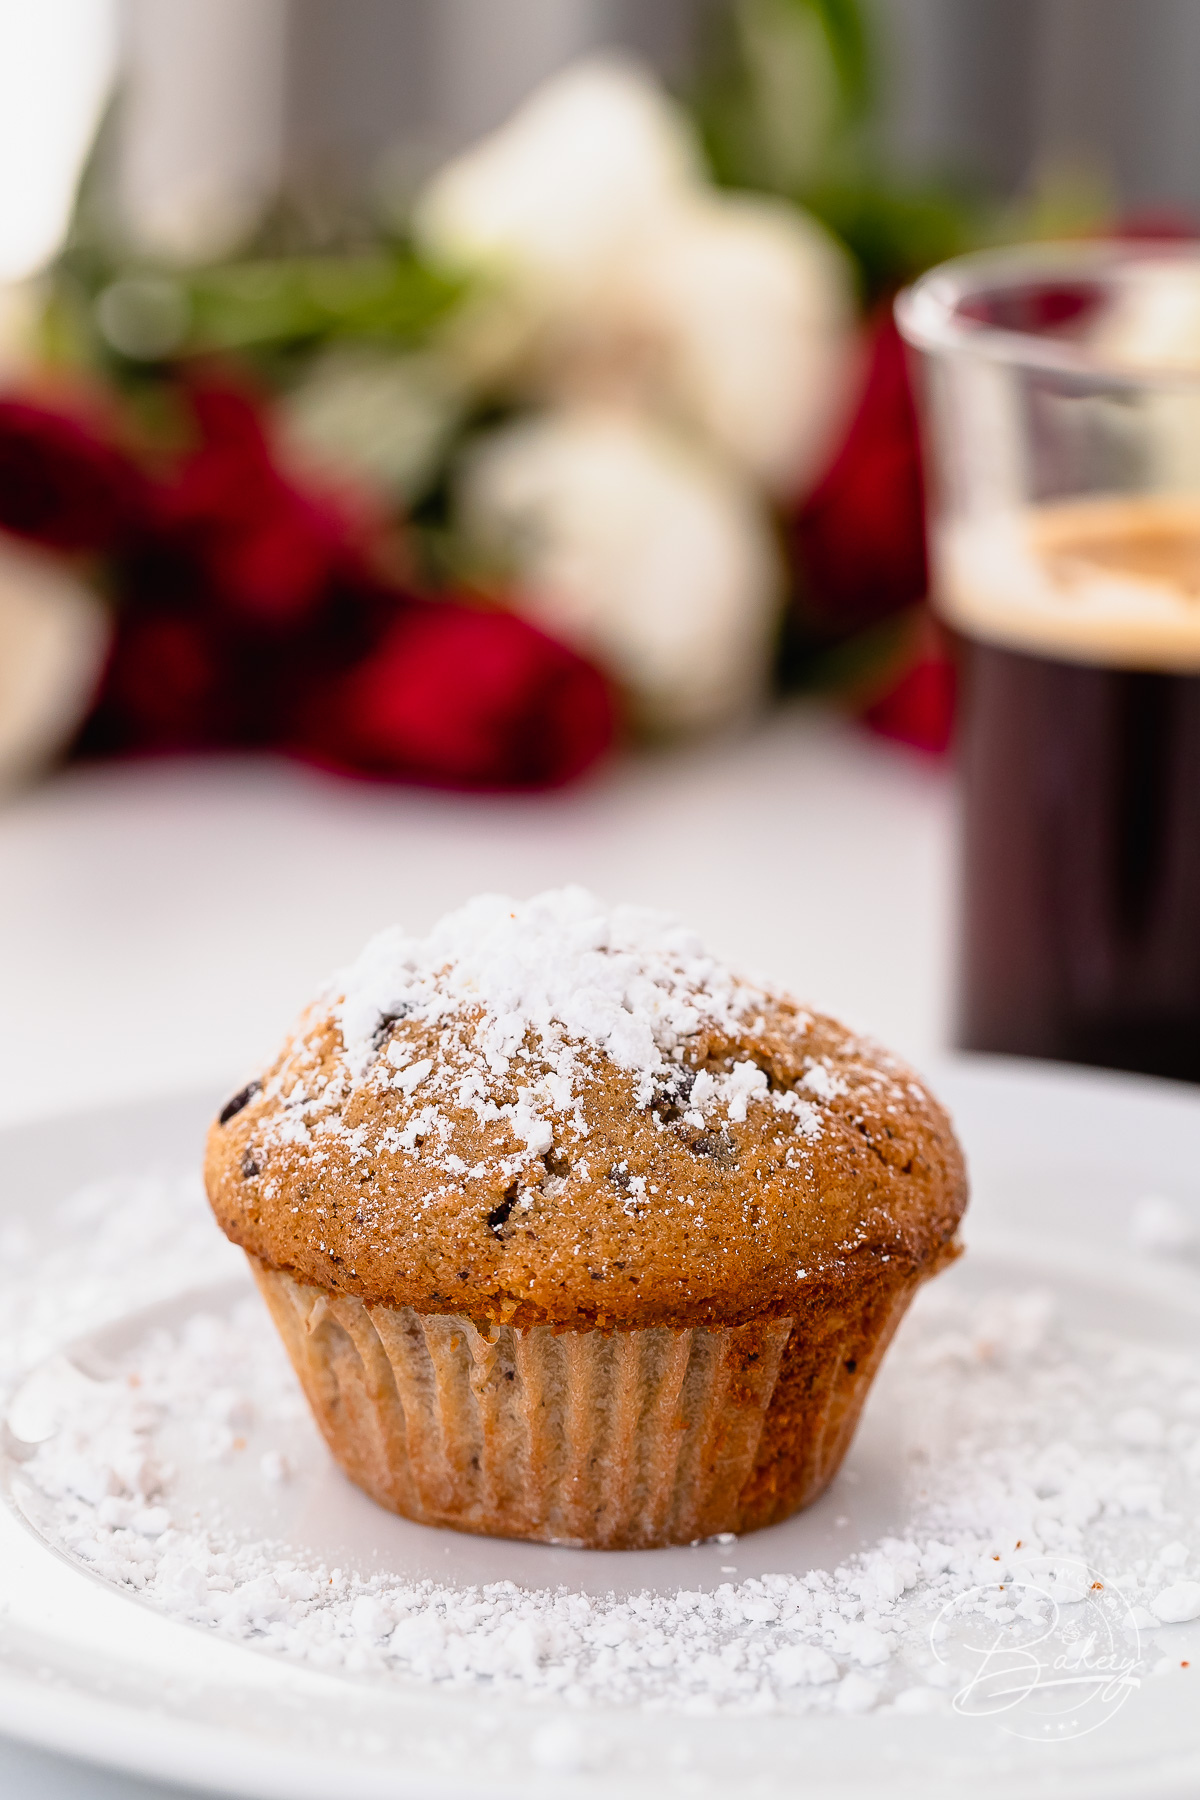 Espresso Muffins Rezept - Kaffee Muffins Backanleitung - Muffins mit Schokolade, Nüssen, Früchten - schnell gemachte Muffins - einfaches Backrezept für Kinder und Erwachsene - Minikuchen Rezept für leckere Kaffee Muffins. Muffins und Cupcakes mit Kaffee Geschmack, dunkler Schokolade, Nüssen